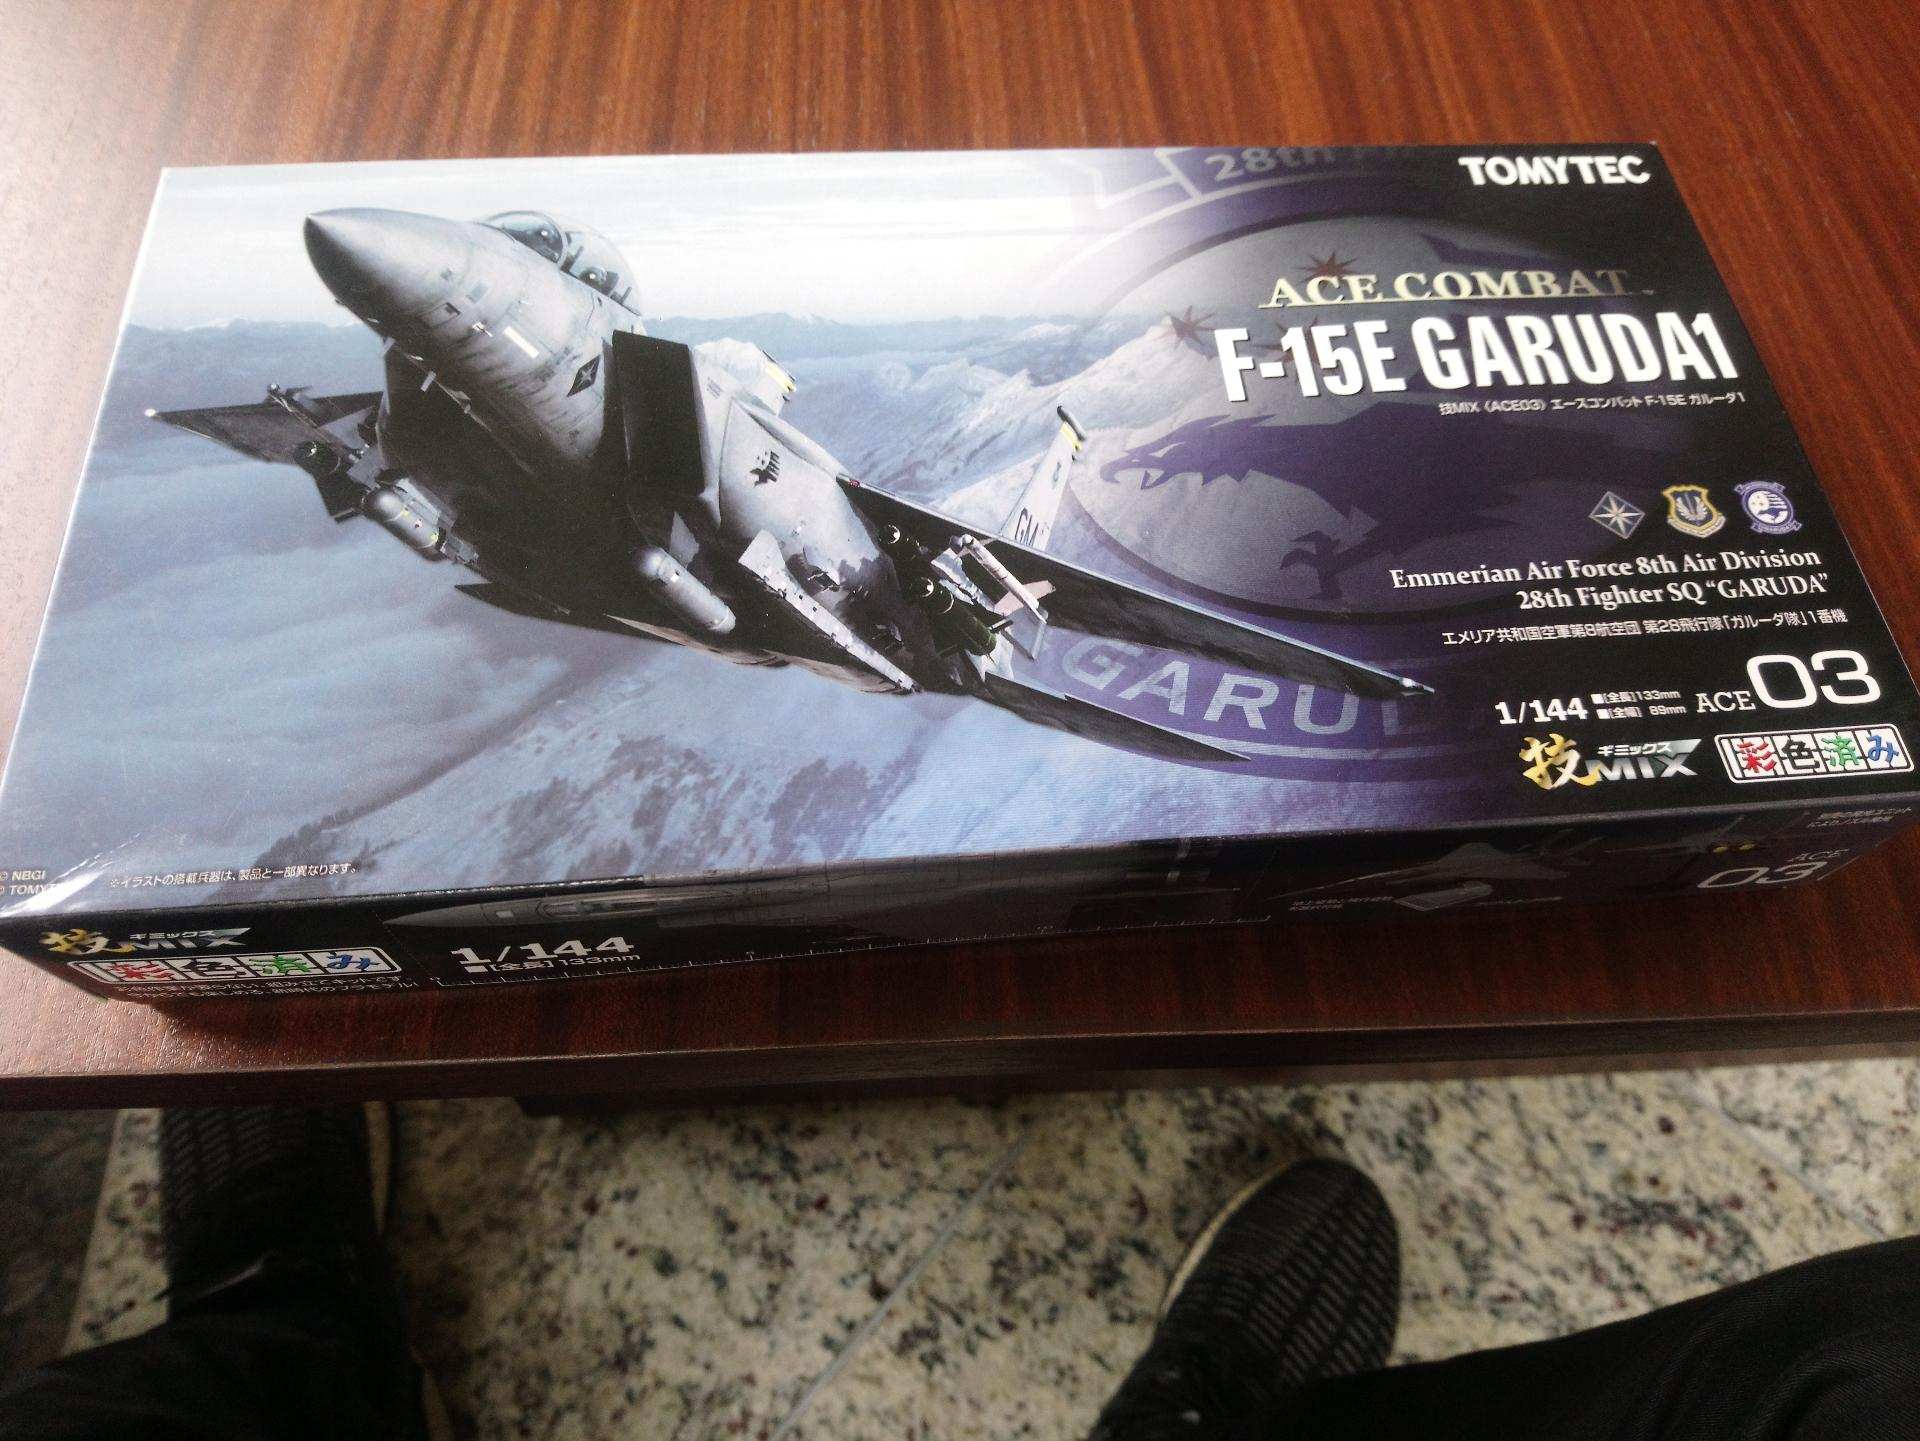 心得】ACE03 1/144 Ace Combat 6 F-15E Garuda 1 組裝心得@空戰奇兵